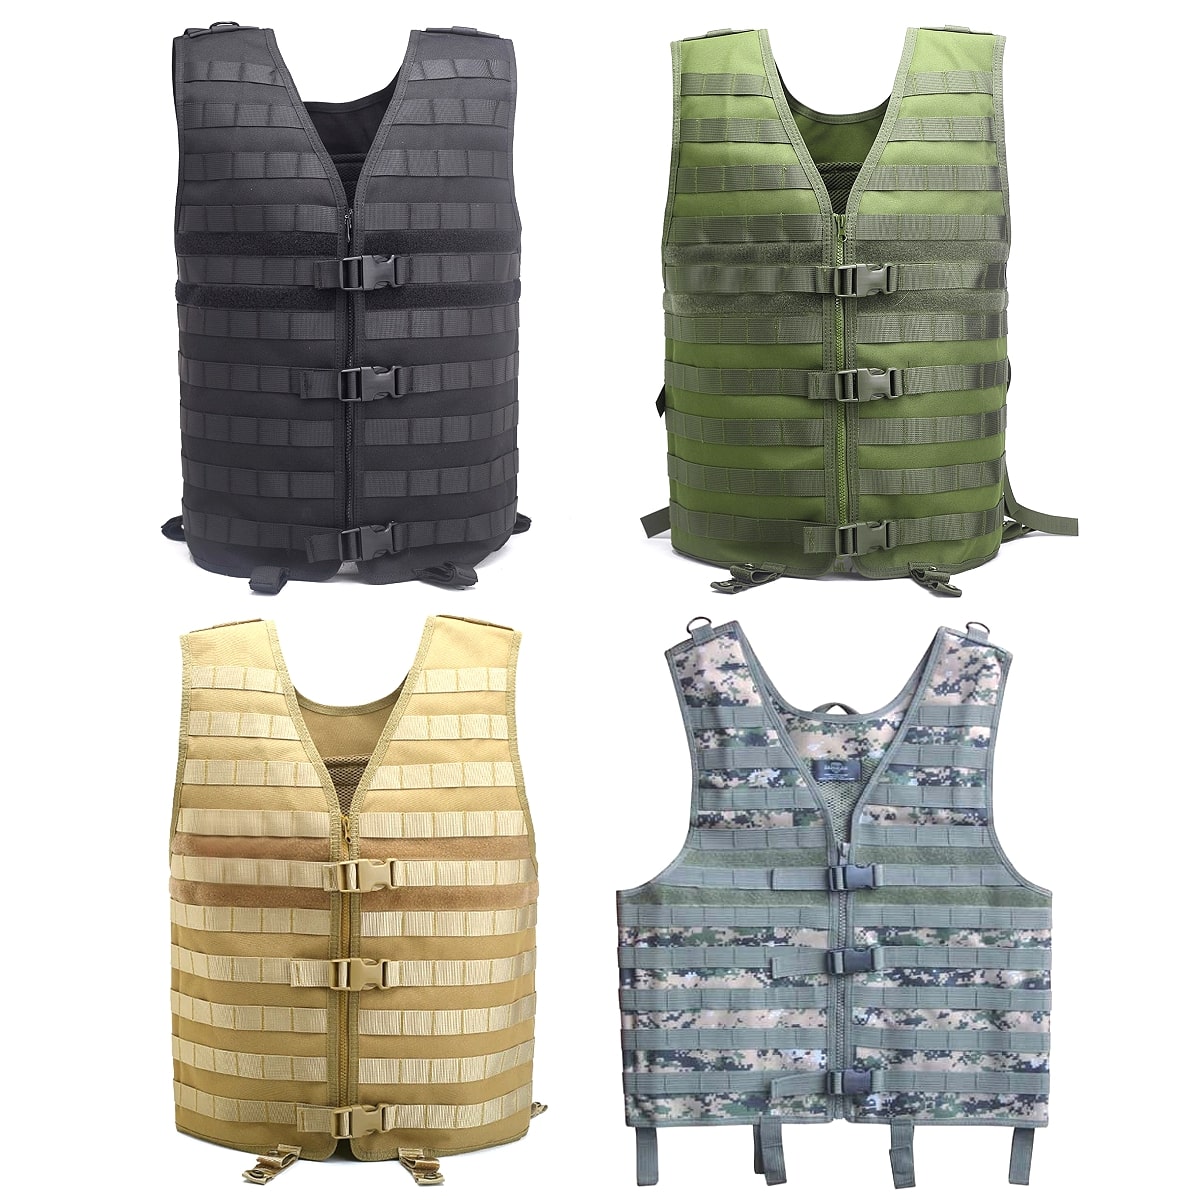 全4色! フリーサイズ [Men s Full Molle System Military Vest] メンズ フルモールシステム ミリタリーベスト! アーミーベスト コンバット ボディアーマー 装備 カモフラージュ 迷彩 防水 アウ…